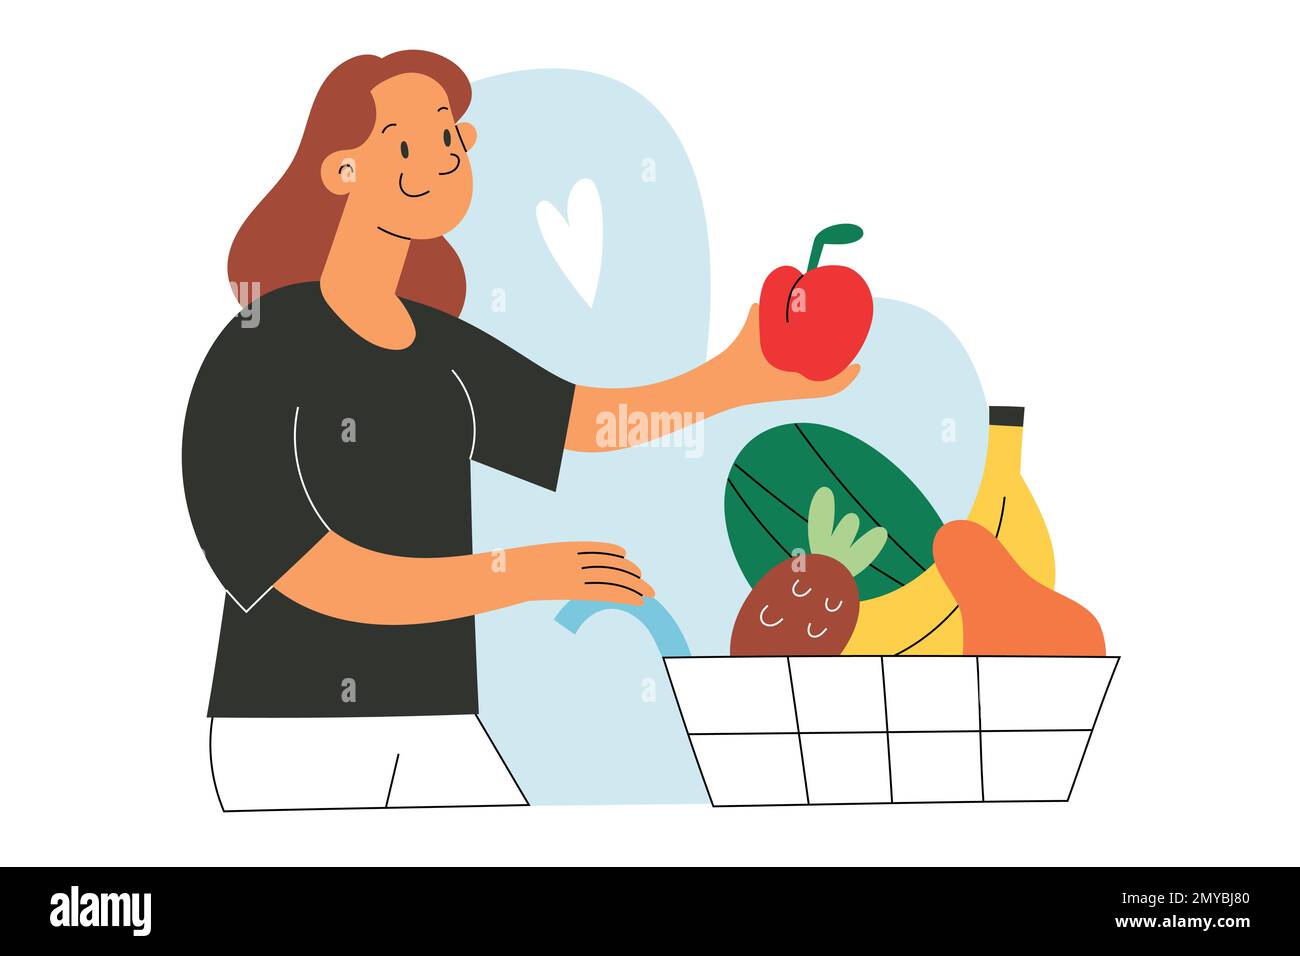 Lächelnde junge Frau, die frisches Obst im Supermarkt kauft, einen Apfel in einen Einkaufswagen mit verschiedenen Früchten im Supermarkt stellt. Flach Stock Vektor